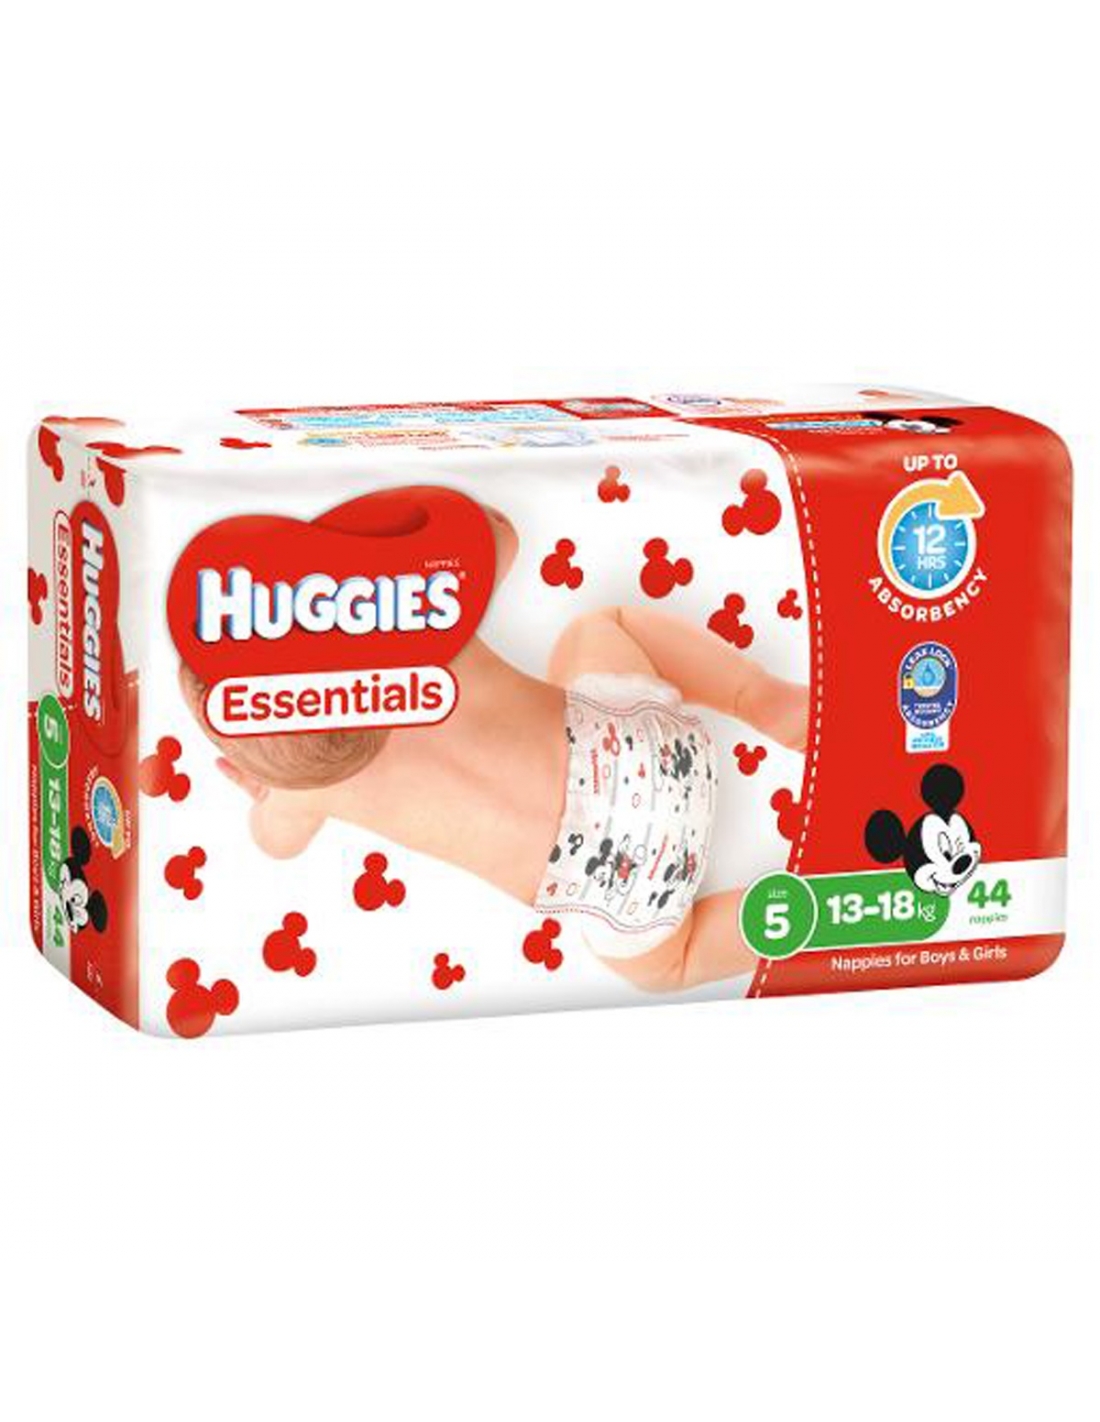 https://www.tastefuldelights.com.au/248176-thickbox_default/huggies-essentials-walker-taille-5-couches-44-paquet.jpg